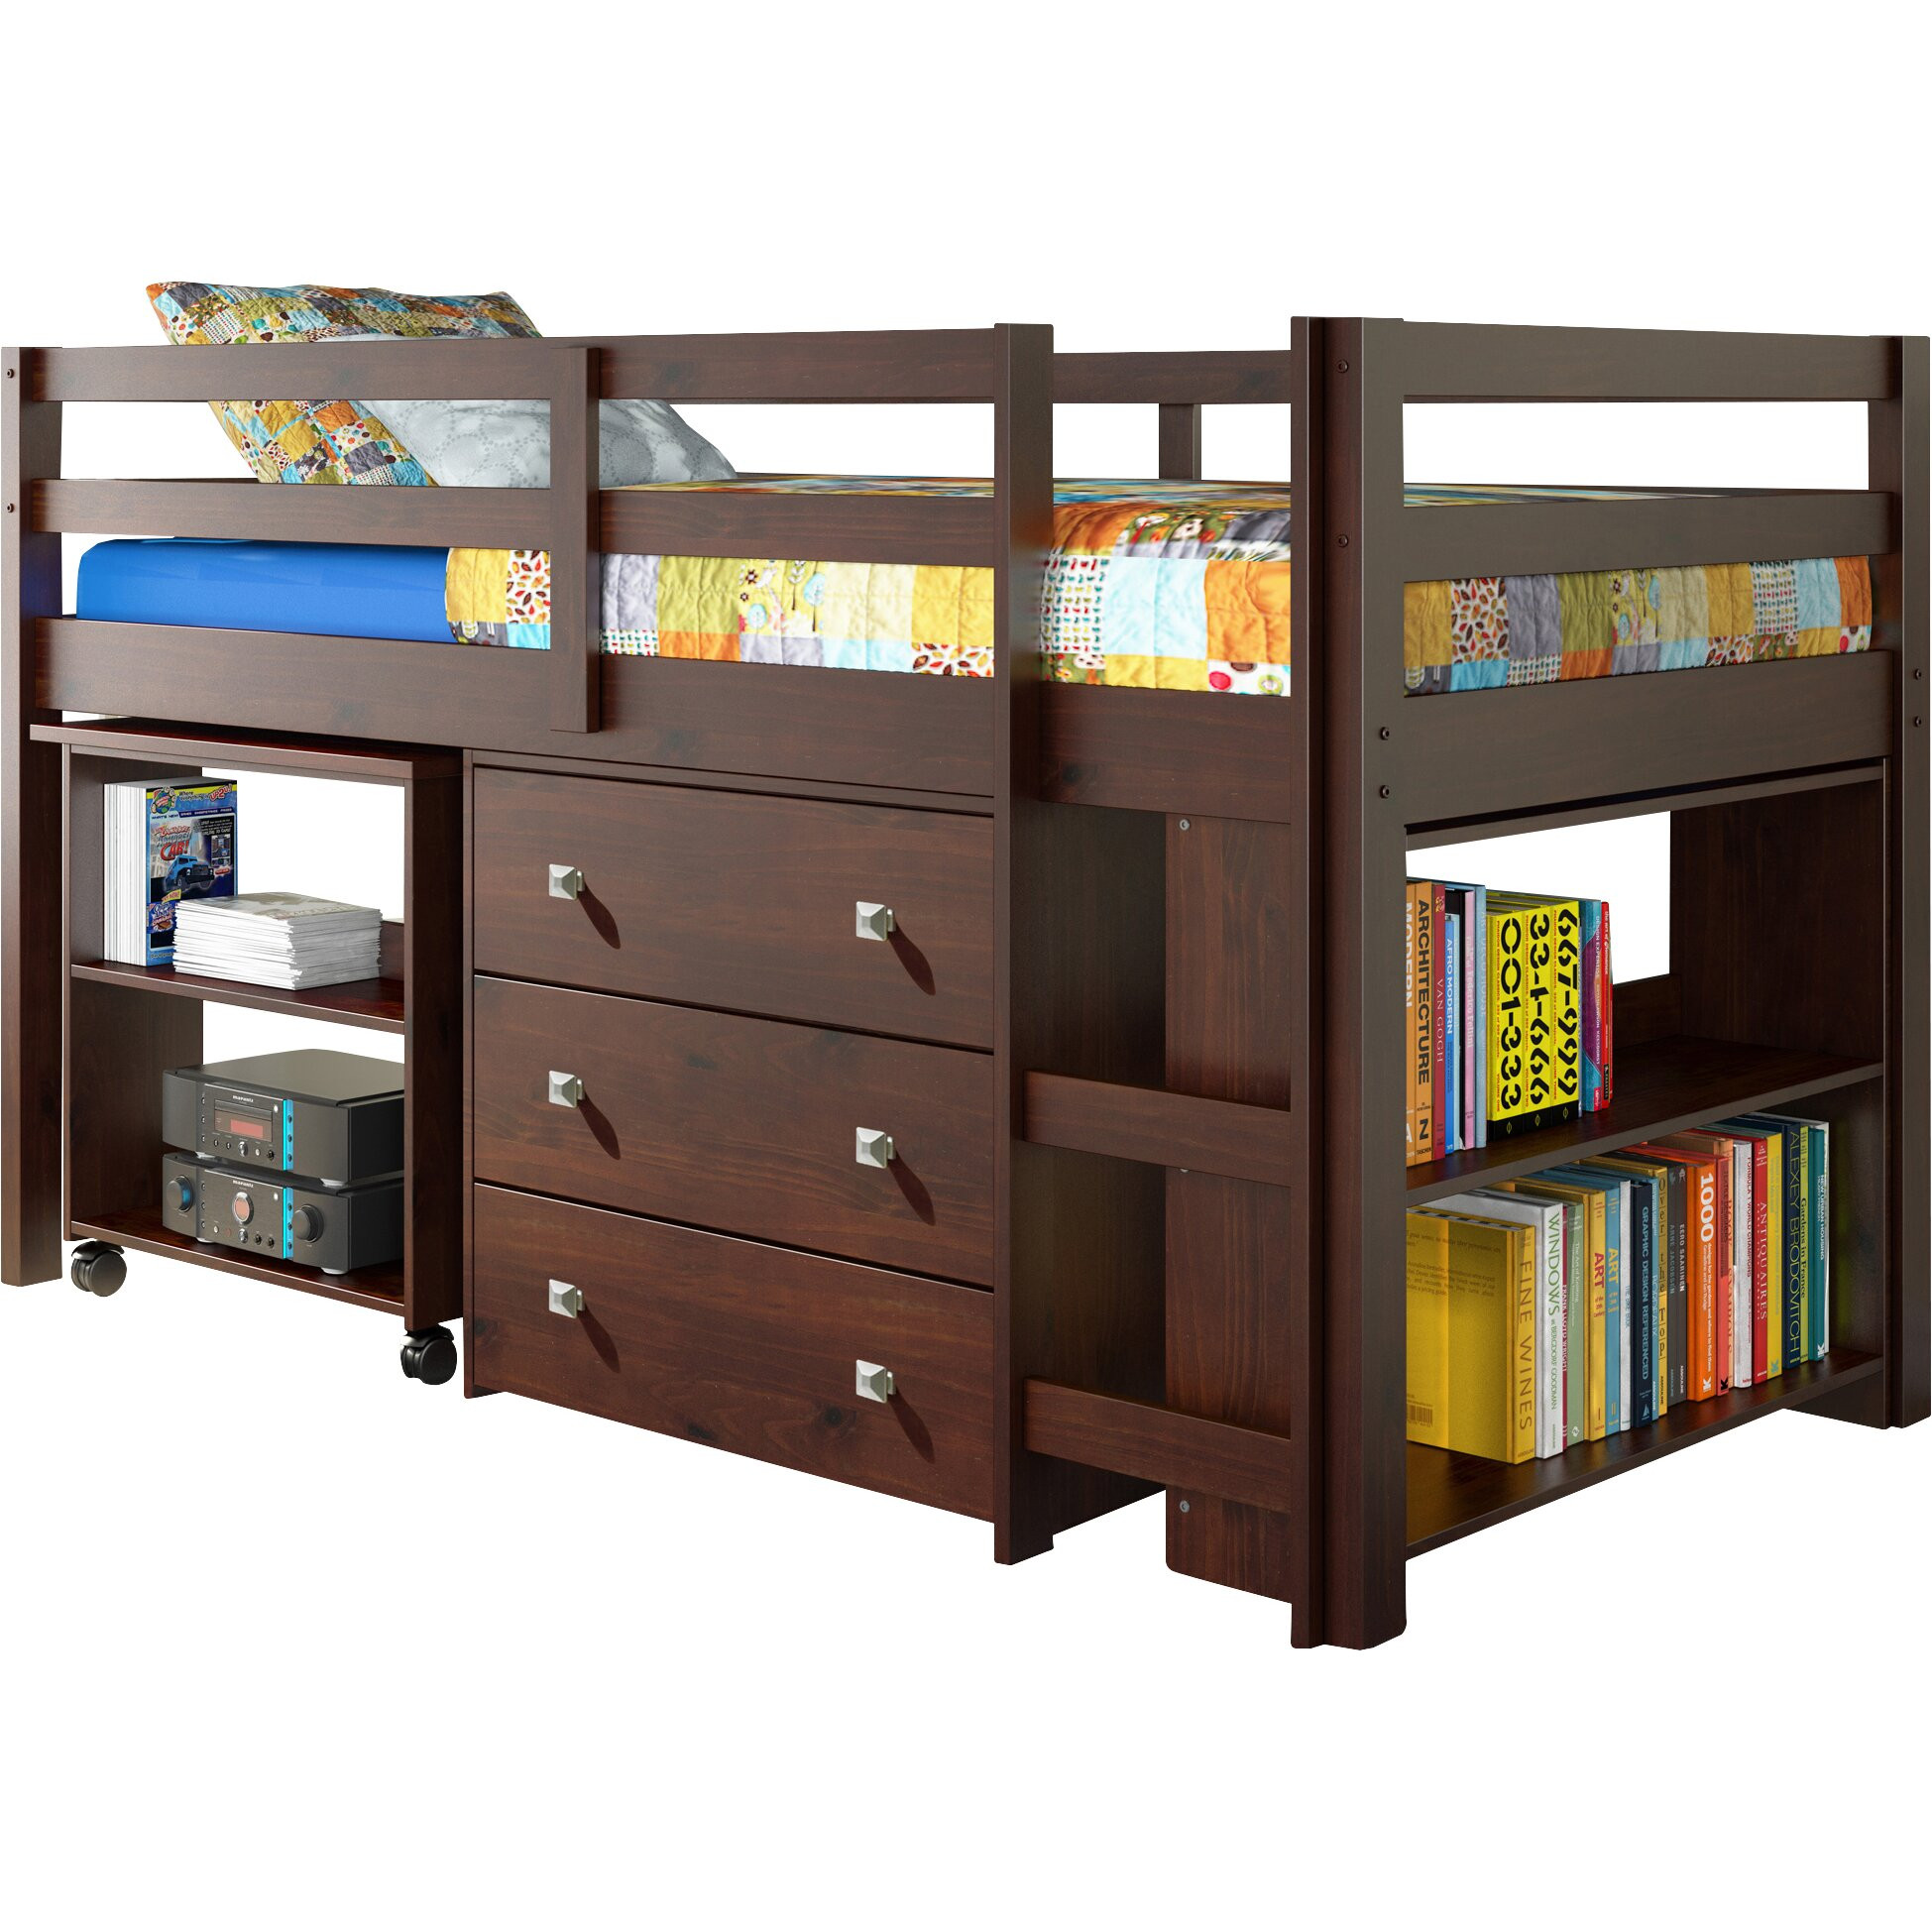 Childrens Loft Bed With Storage
 Donco Kids Twin Low Loft Bed with Storage & Reviews